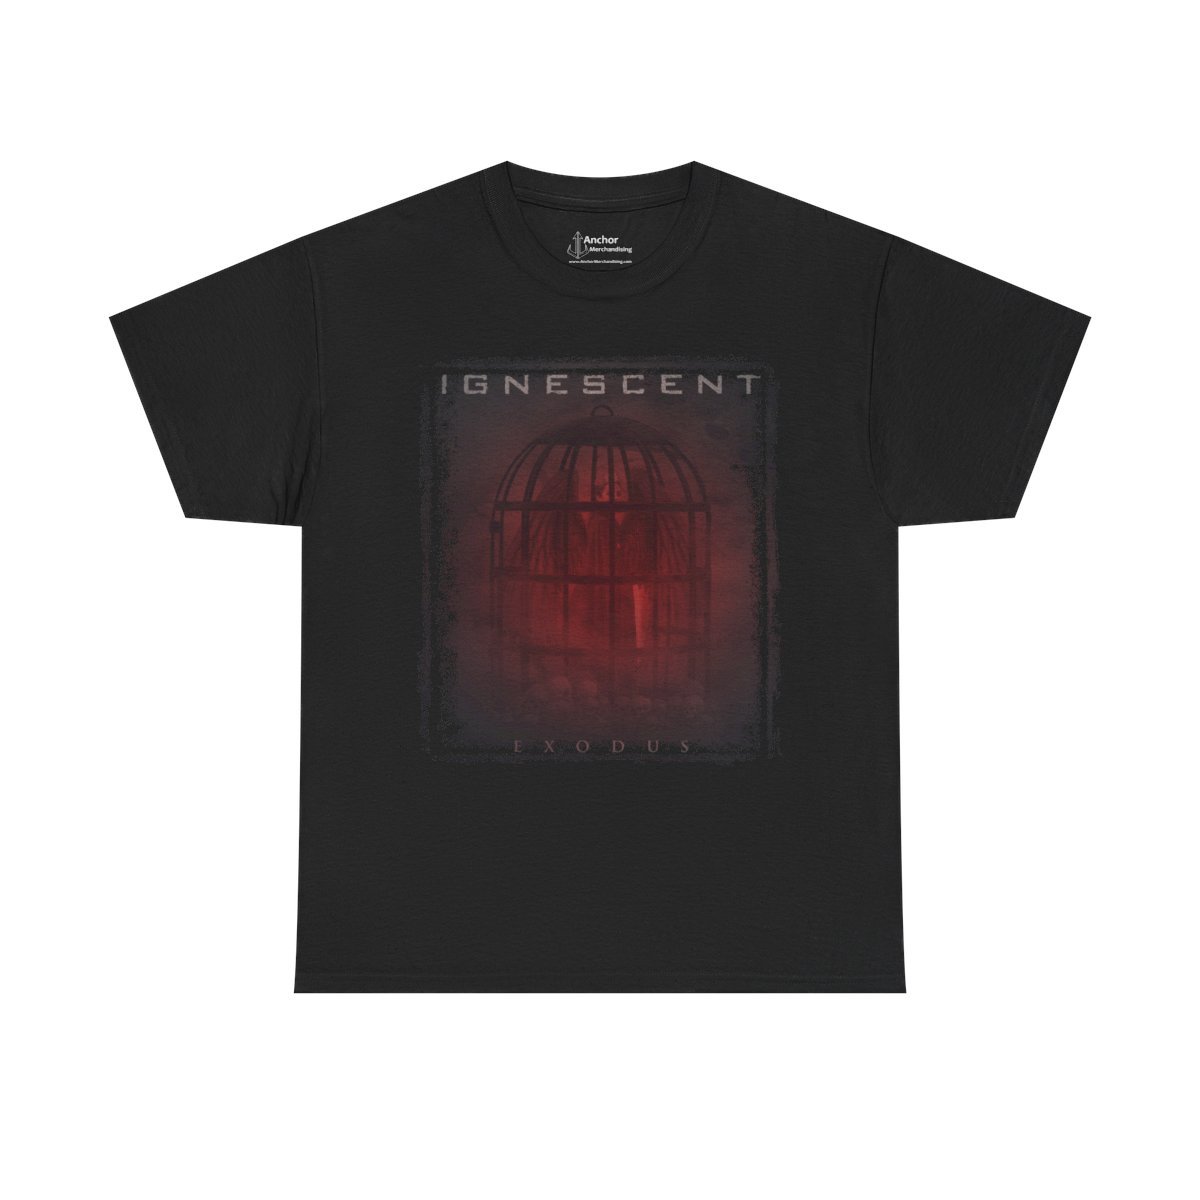 Ignescent – Exodus Short Sleeve Tshirt (2-Sided)